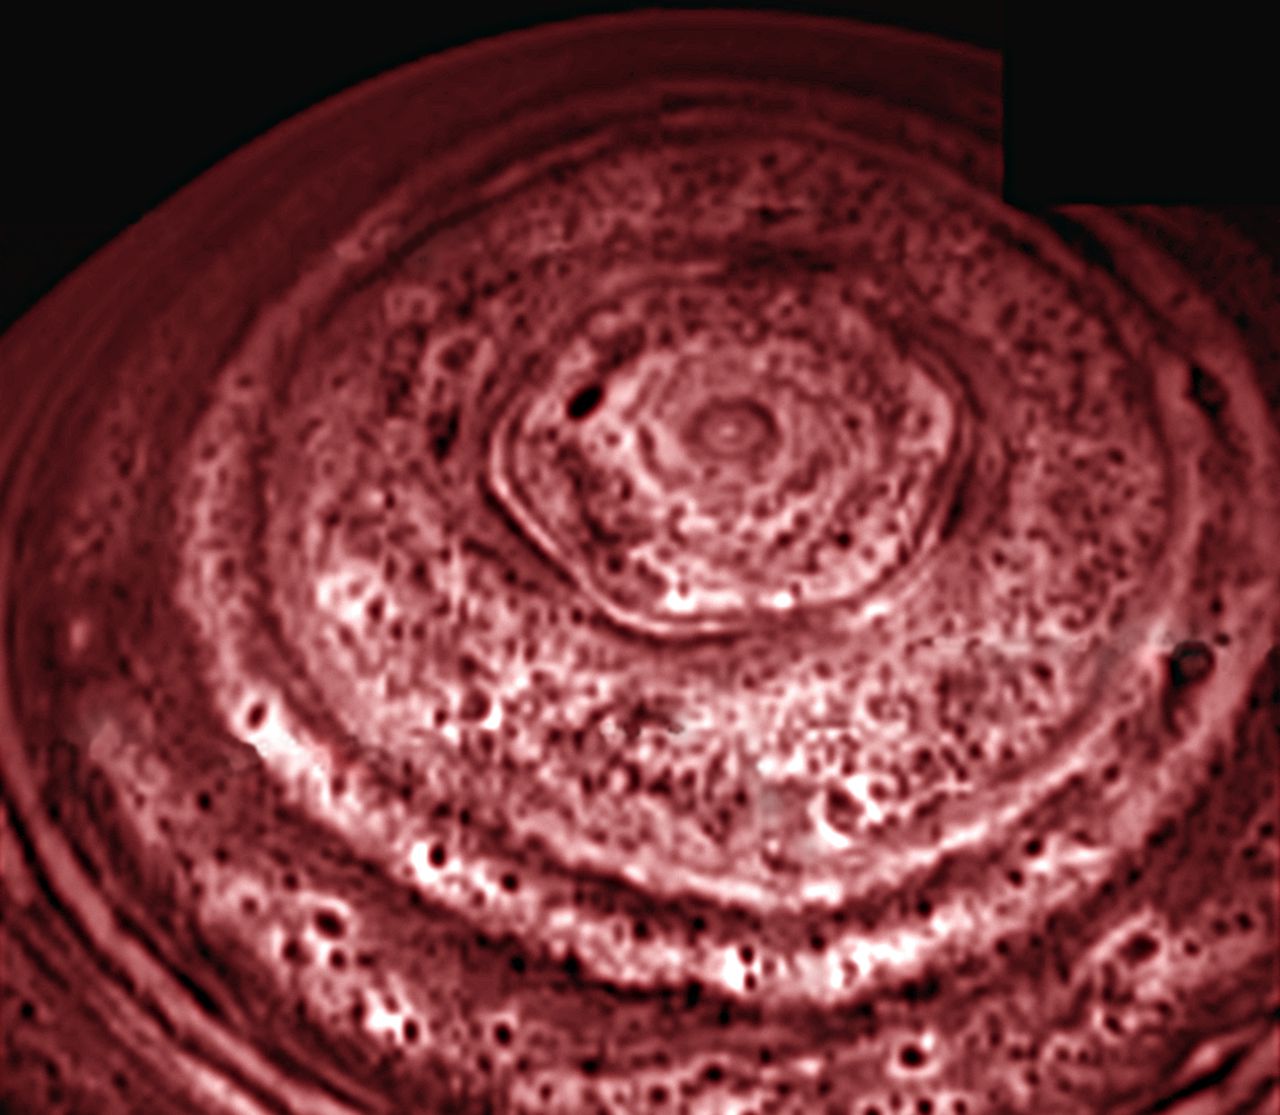 Magische zeshoek Rond de noordpool van Saturnus tekent zich een merkwaardige zeshoek af. De zeshoek in de Saturnusatmosfeer werd in oktober 2006 in beeld gebracht met de infraroodcamera’s aan boord van de NASA-ruimtesonde Cassini, die rond Saturnus beweegt. Deze week werden de opnames naar buiten gebracht. De Voyagers namen in de jaren tachtig de enorme zeshoek (de aarde past er vier keer in) ook al waar, en dat zou betekenen dat dit atmosferisch fenomeen al twintig jaar optreedt. Op aarde bewegen winden in een cirkelvormig patroon rond de polen. Ook op de zuidpool van Saturnus woedt wat op een orkaan met een groot oog lijkt. Welk mechanisme bij de noordpool van Saturnus voor de zes bijna rechte zijdes zorgt, is nog onduidelijk. (MvdH)